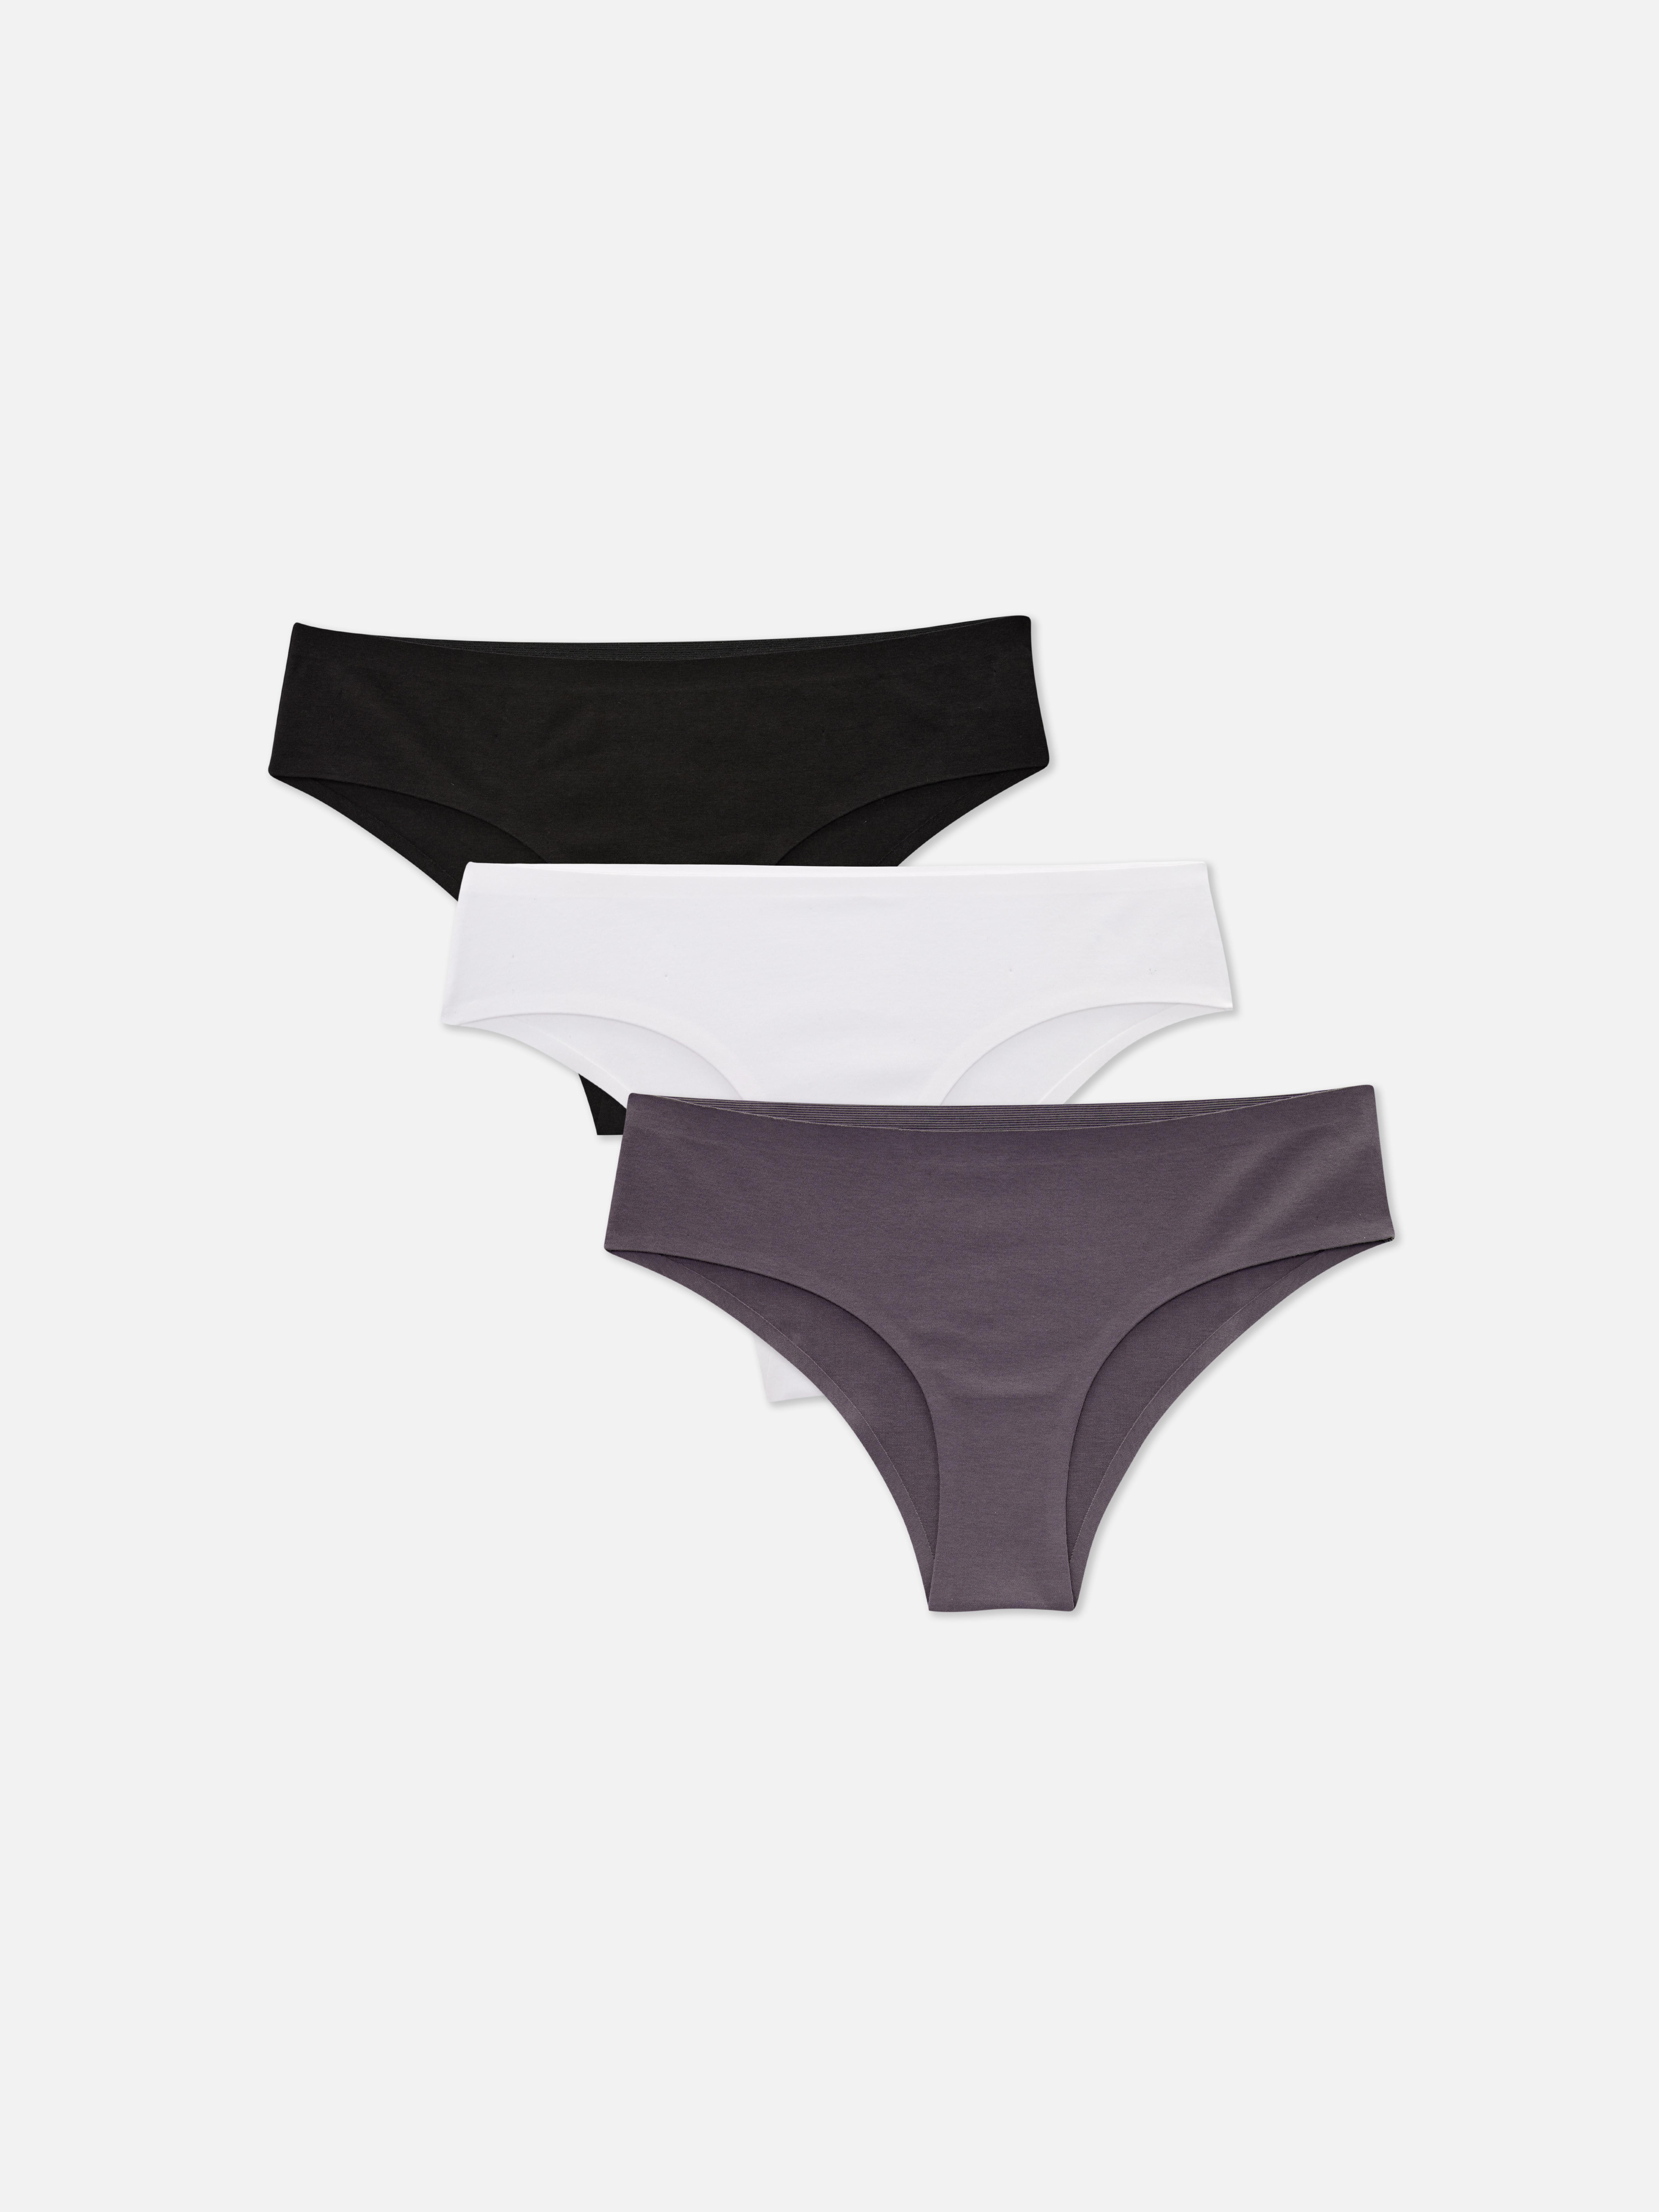 Primark Seam Free Mini Briefs Knickers Ladies Women Underwear 3 Pack